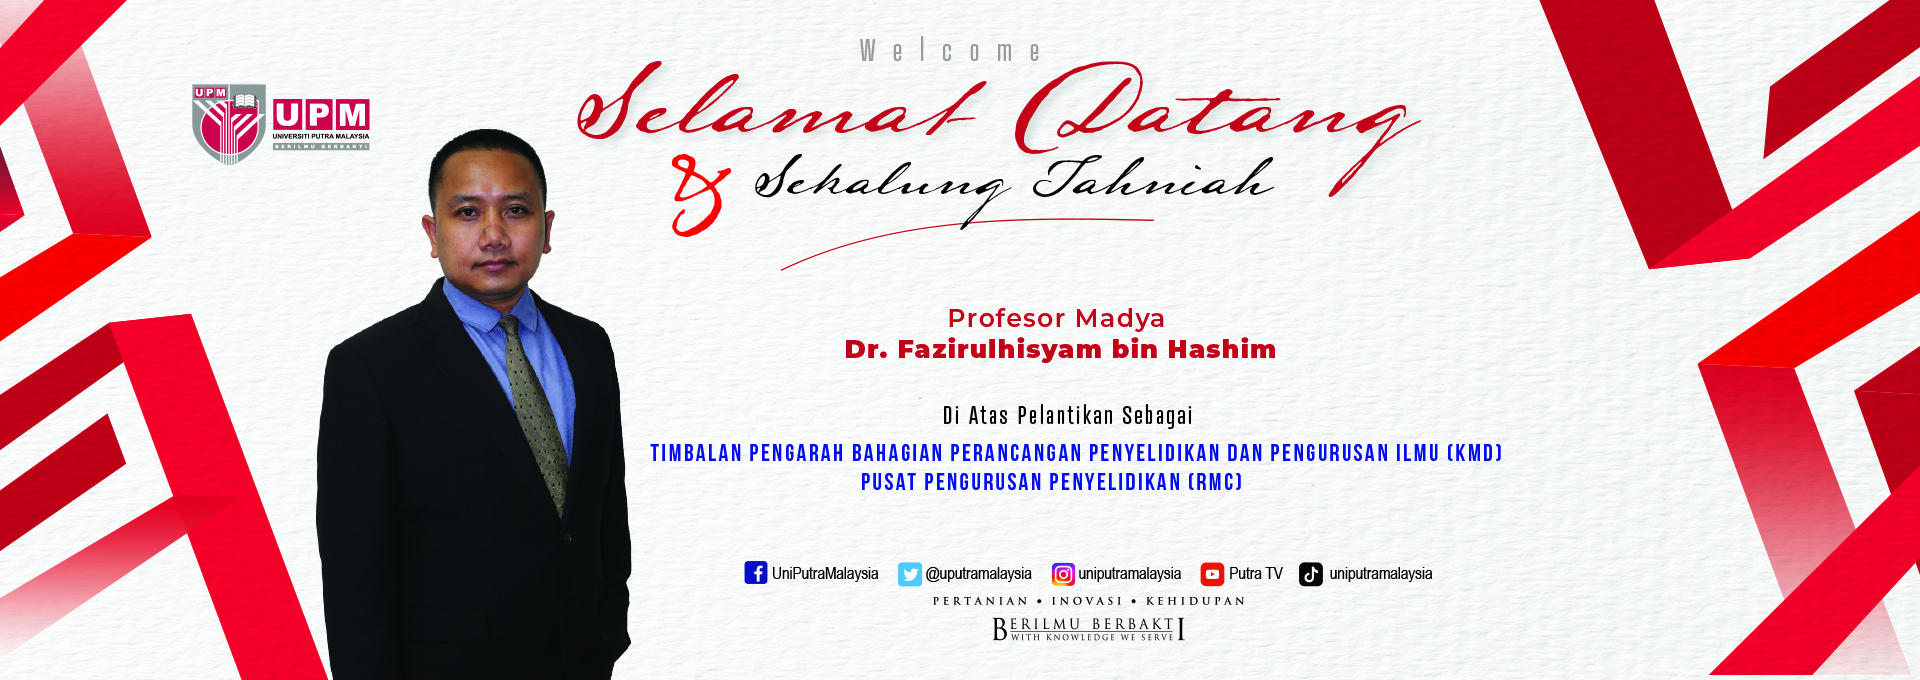 Ucapan Tahniah Prof Madya Dr. Fazirulhisyam bin Hashim